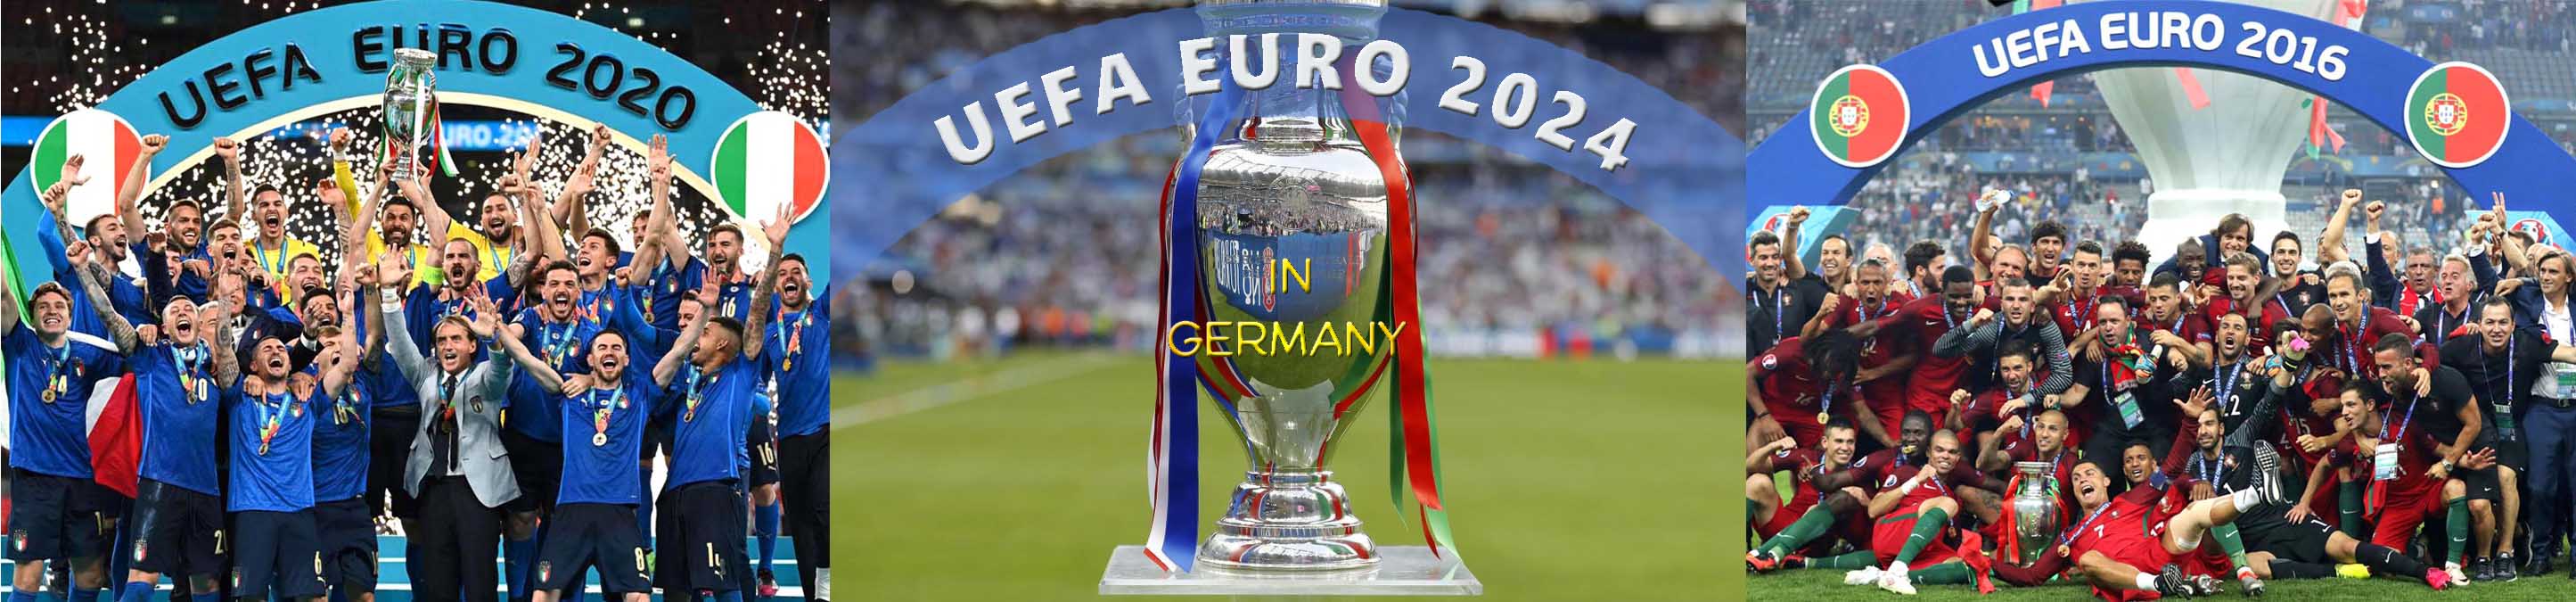 Logo EURO 2024 bzw. EM 2024